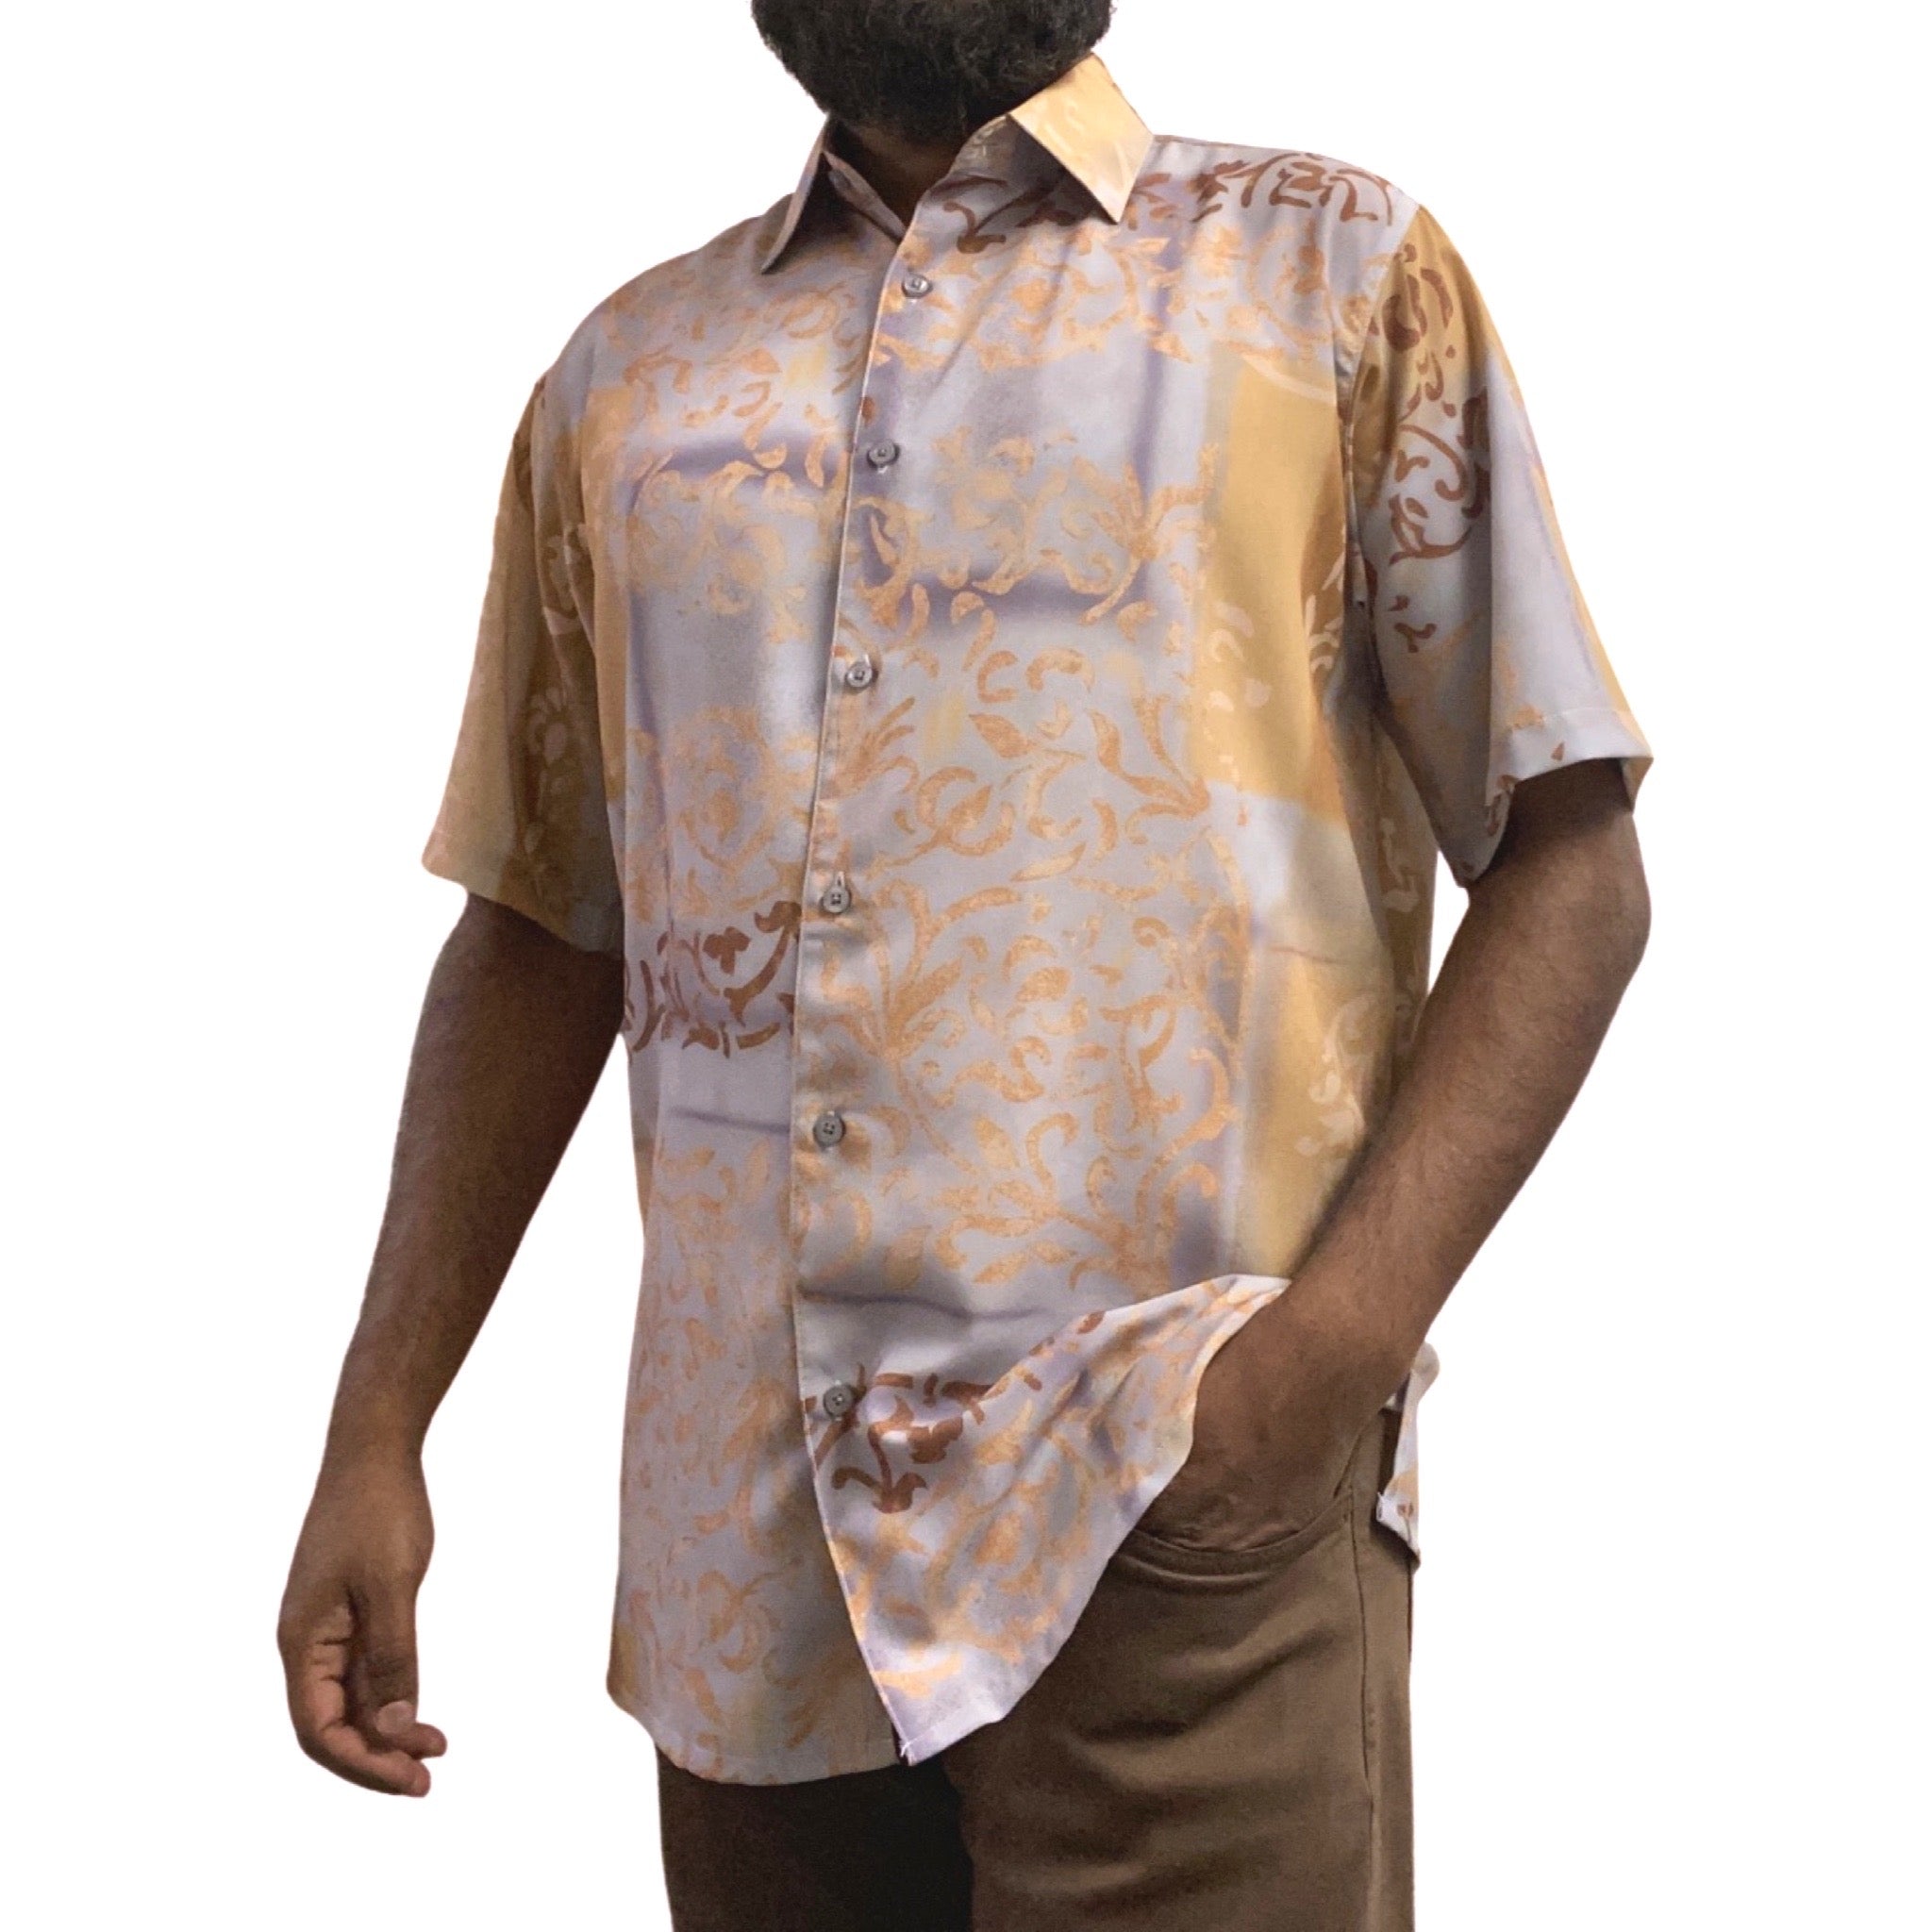 Mens gray and brown casual short sleeve shirt